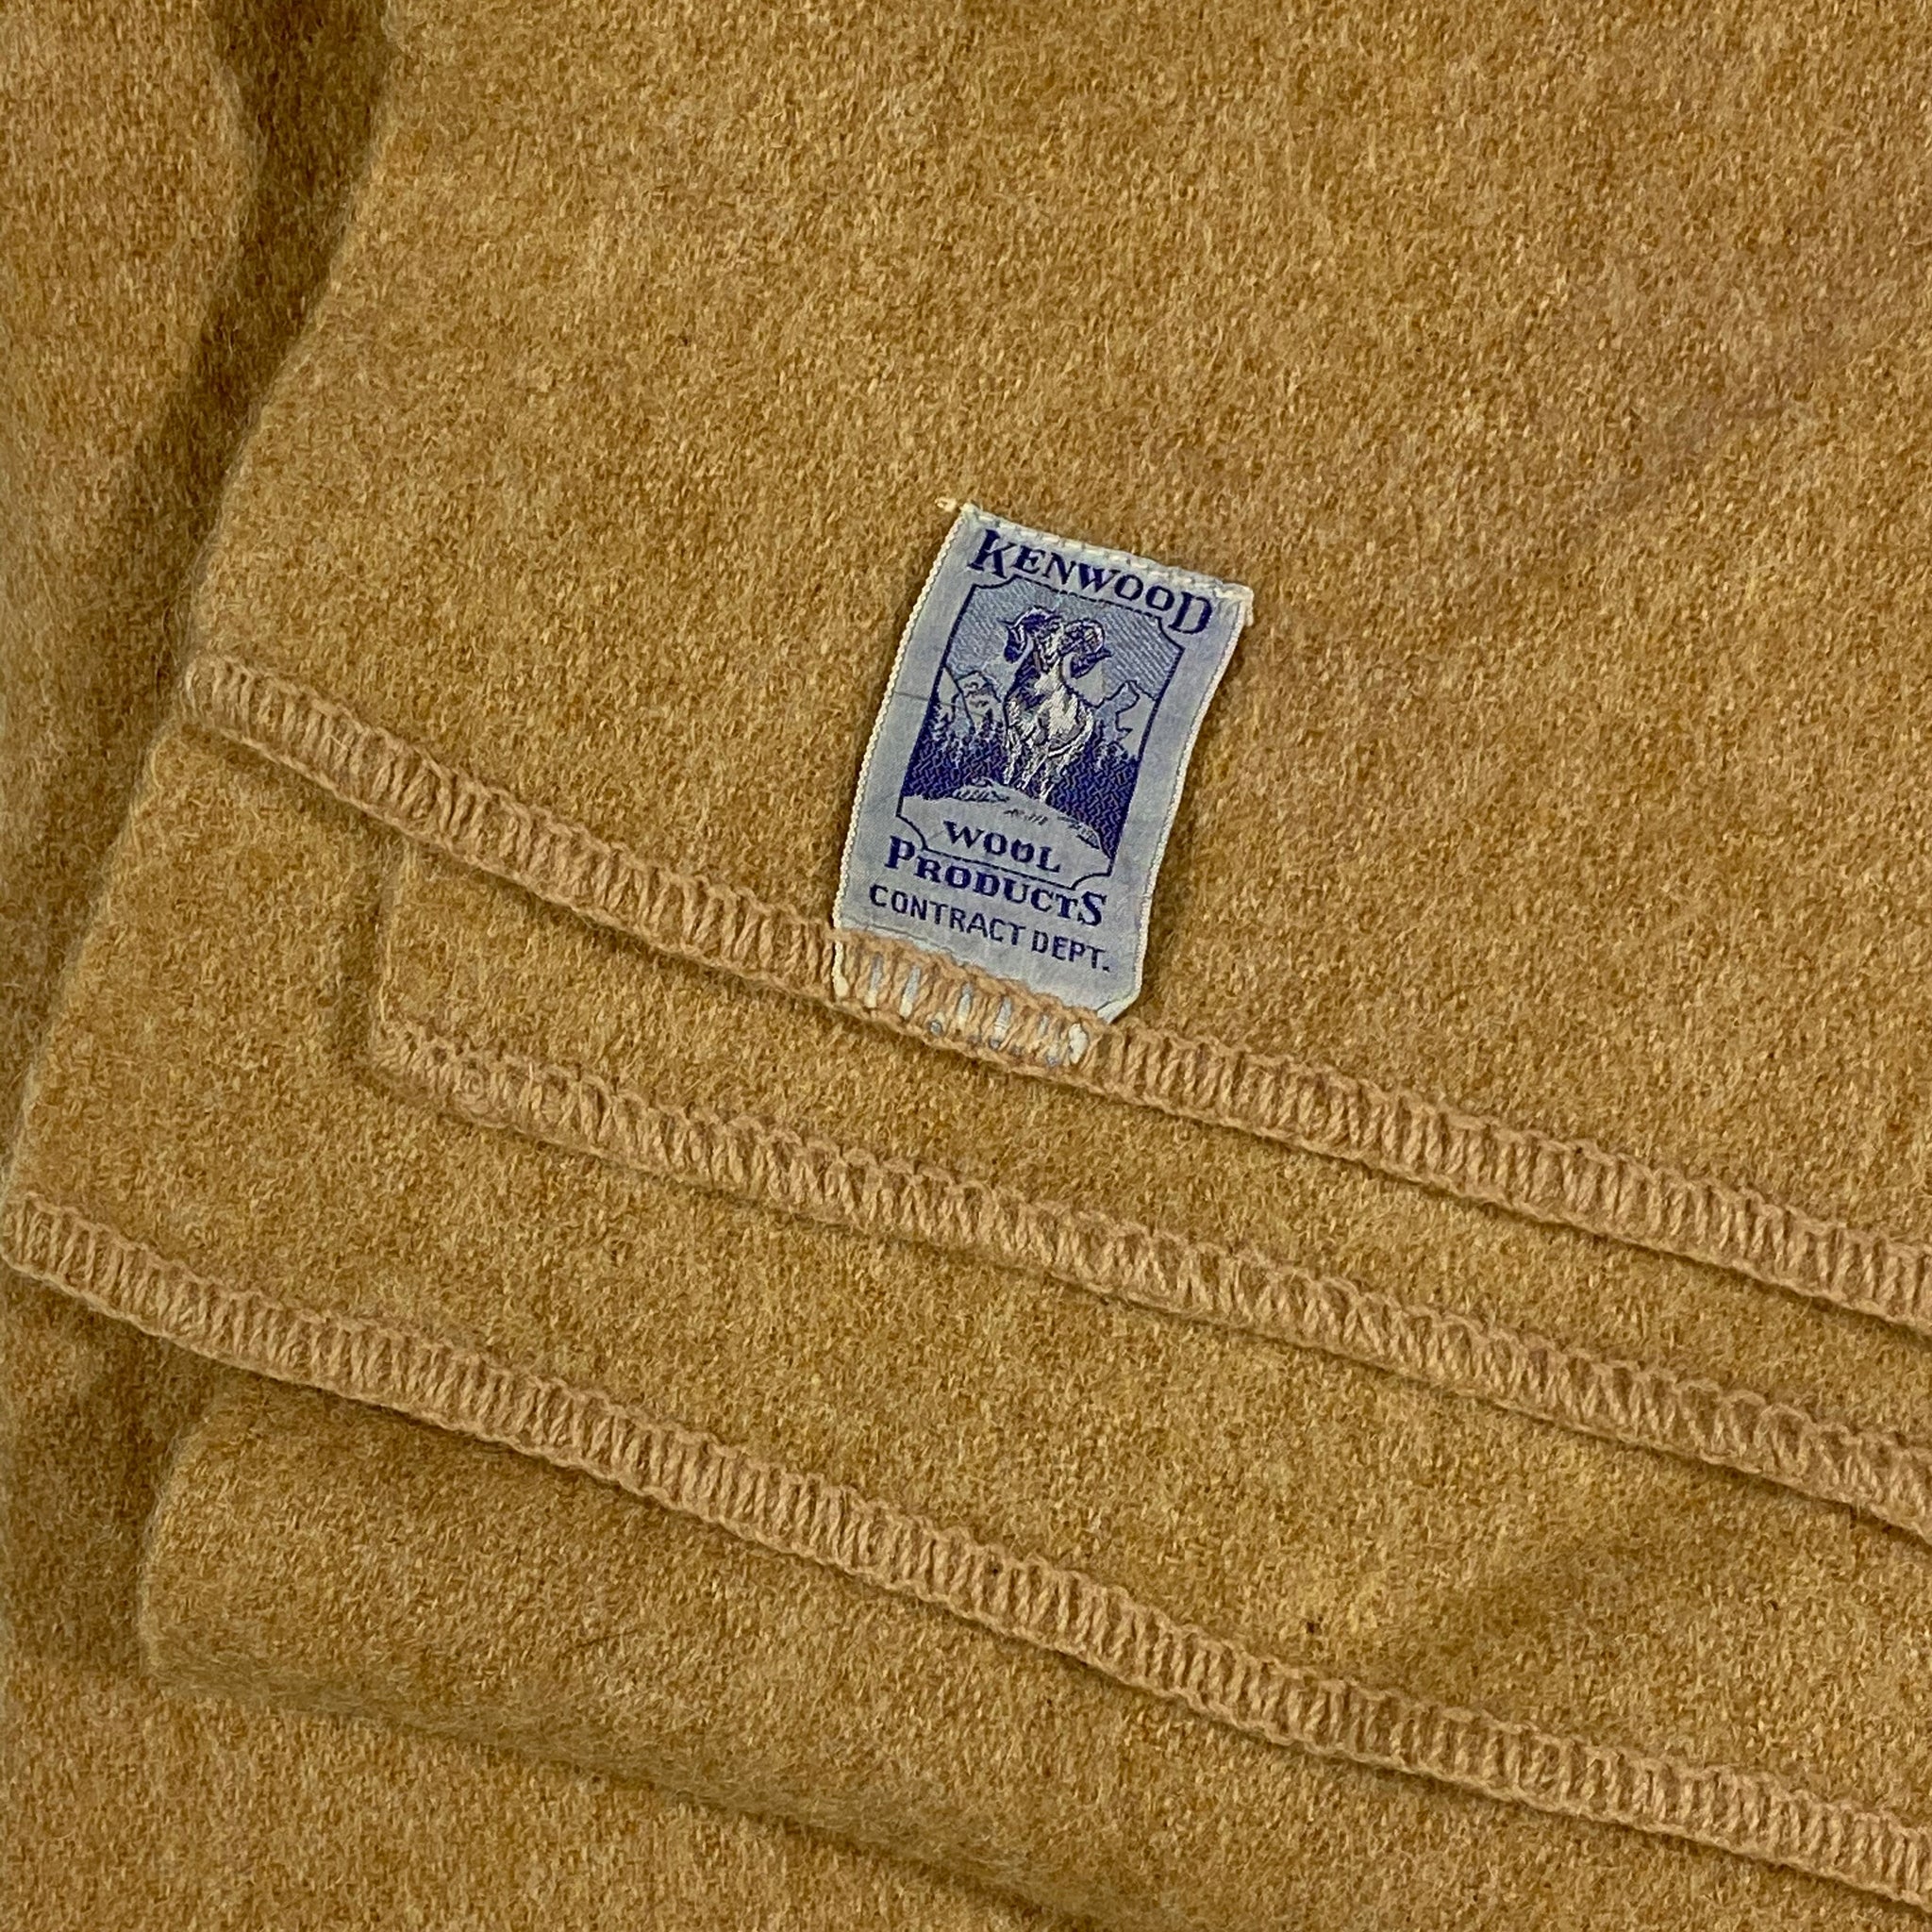 Kenwood wool products blanket. 46x48 – Vintage Sponsor